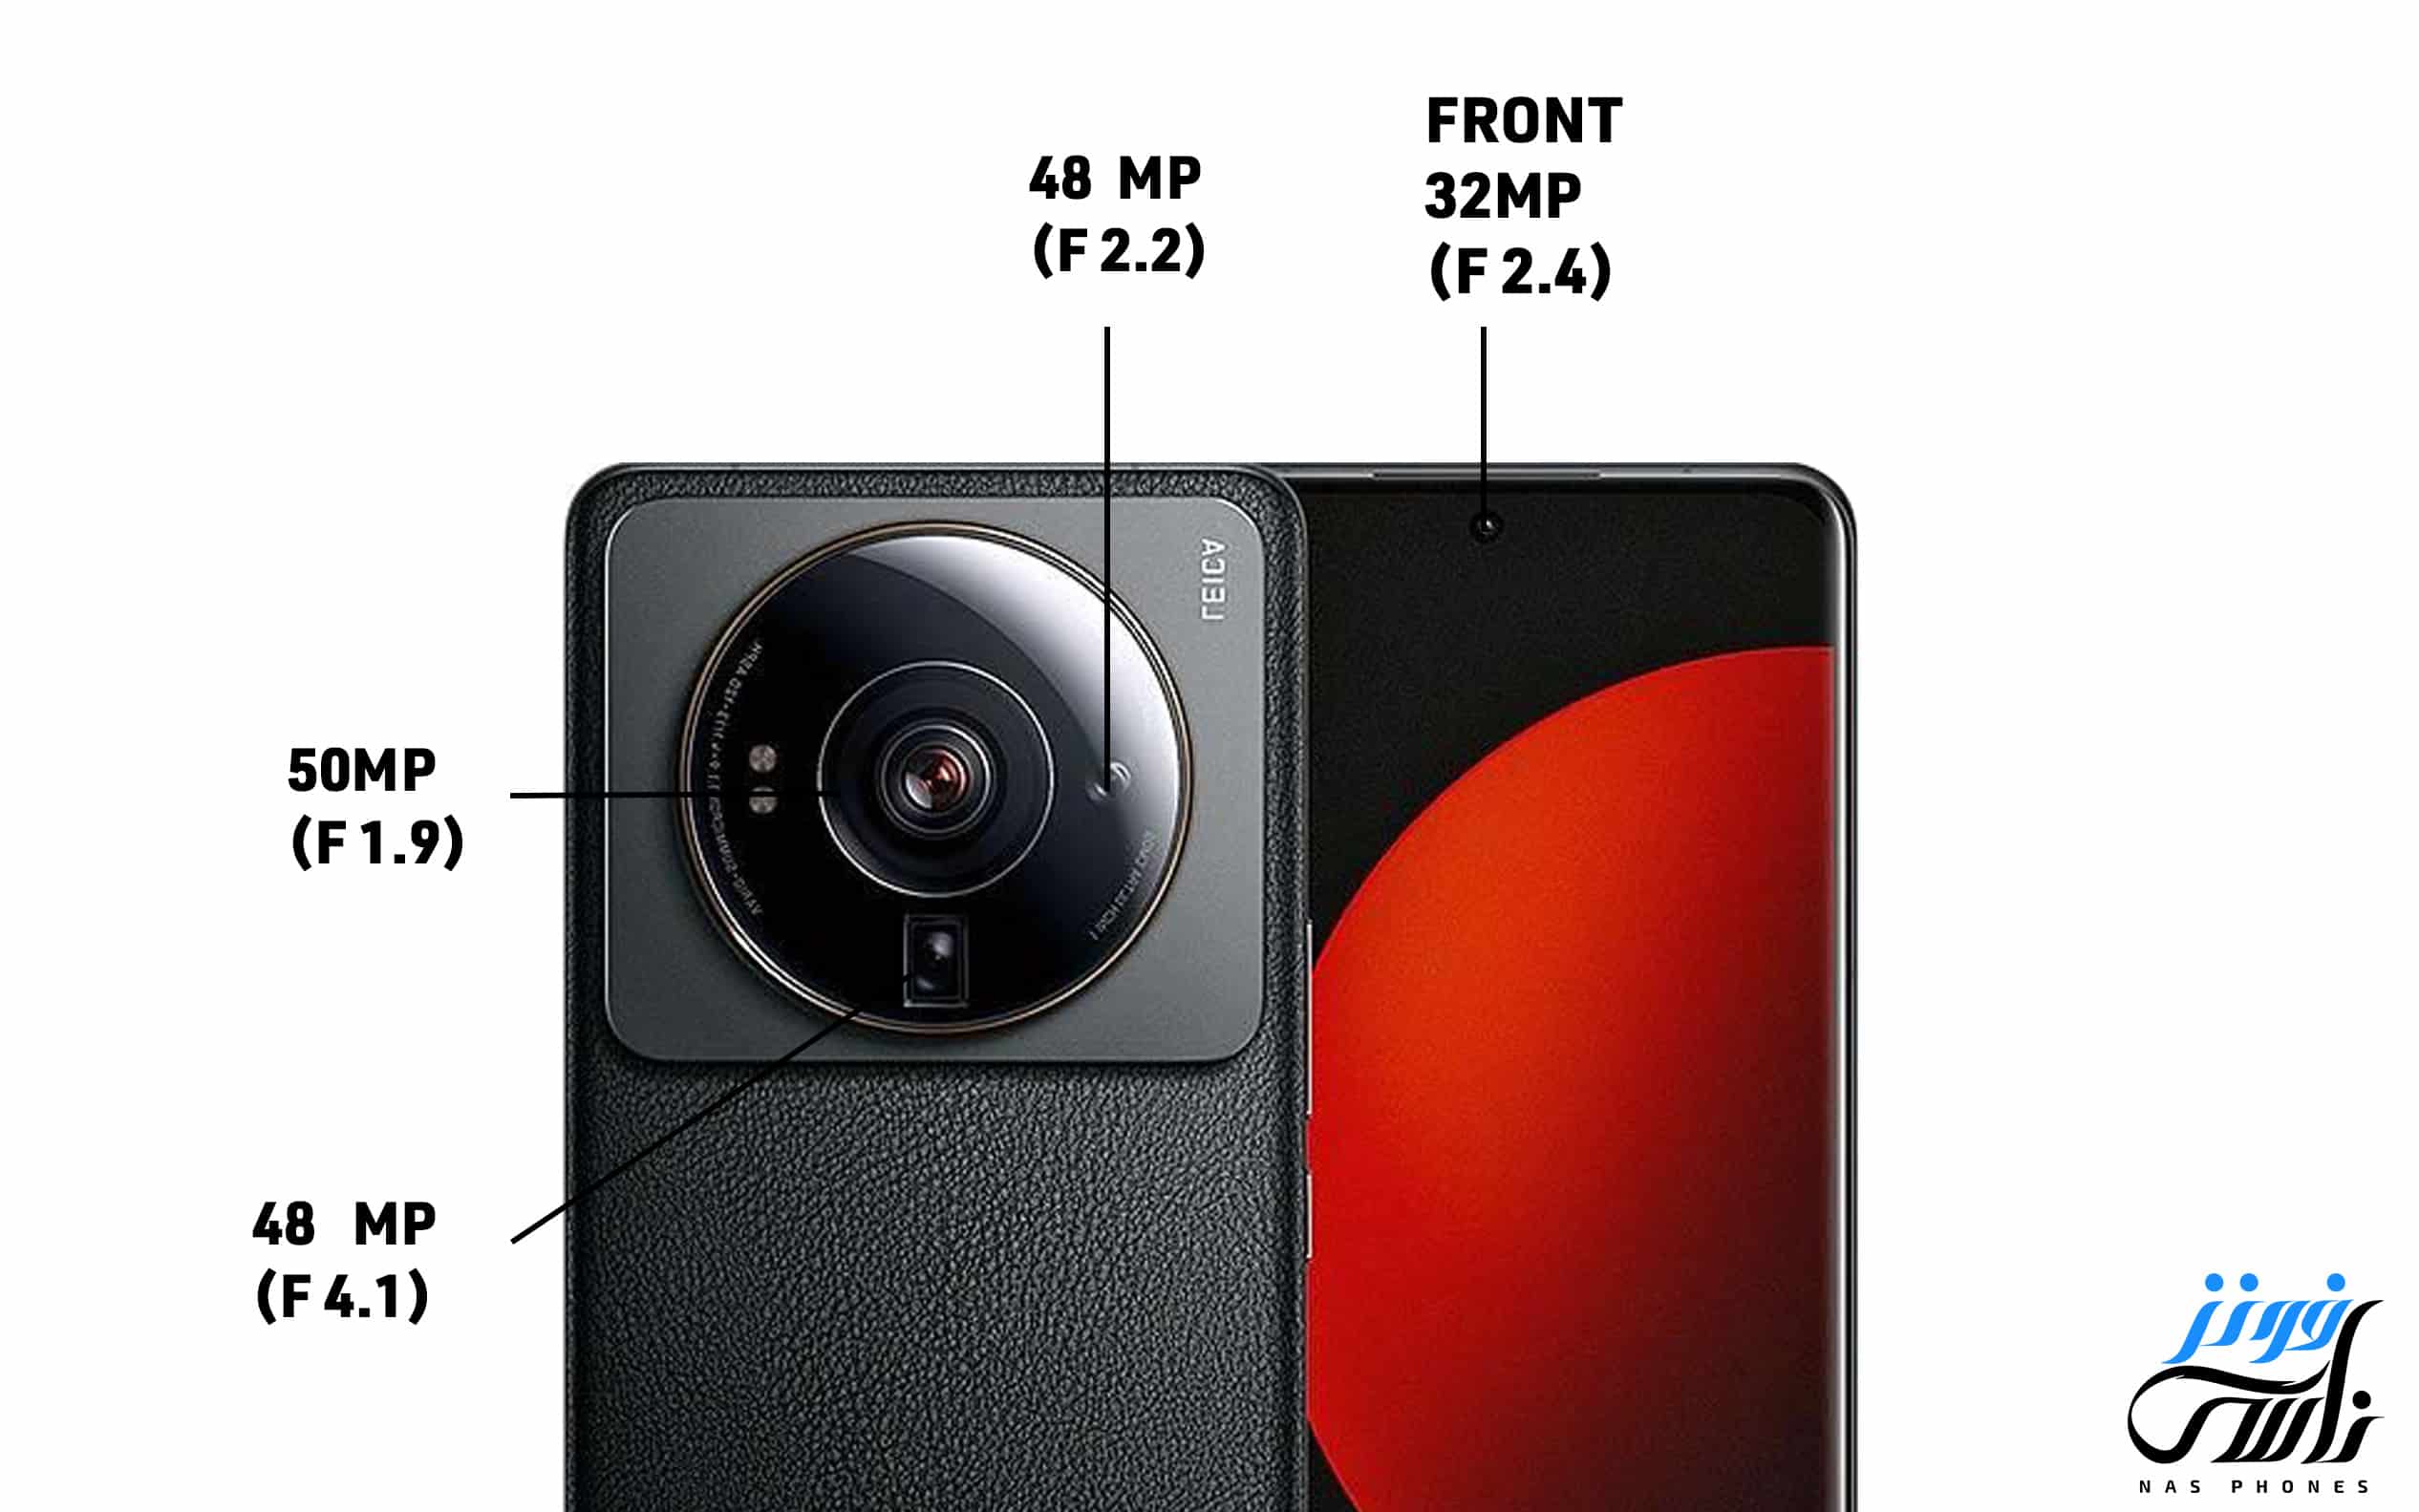 8 أسباب تجعلك ترغب في شراء هاتف Xiaomi 12S Ultra